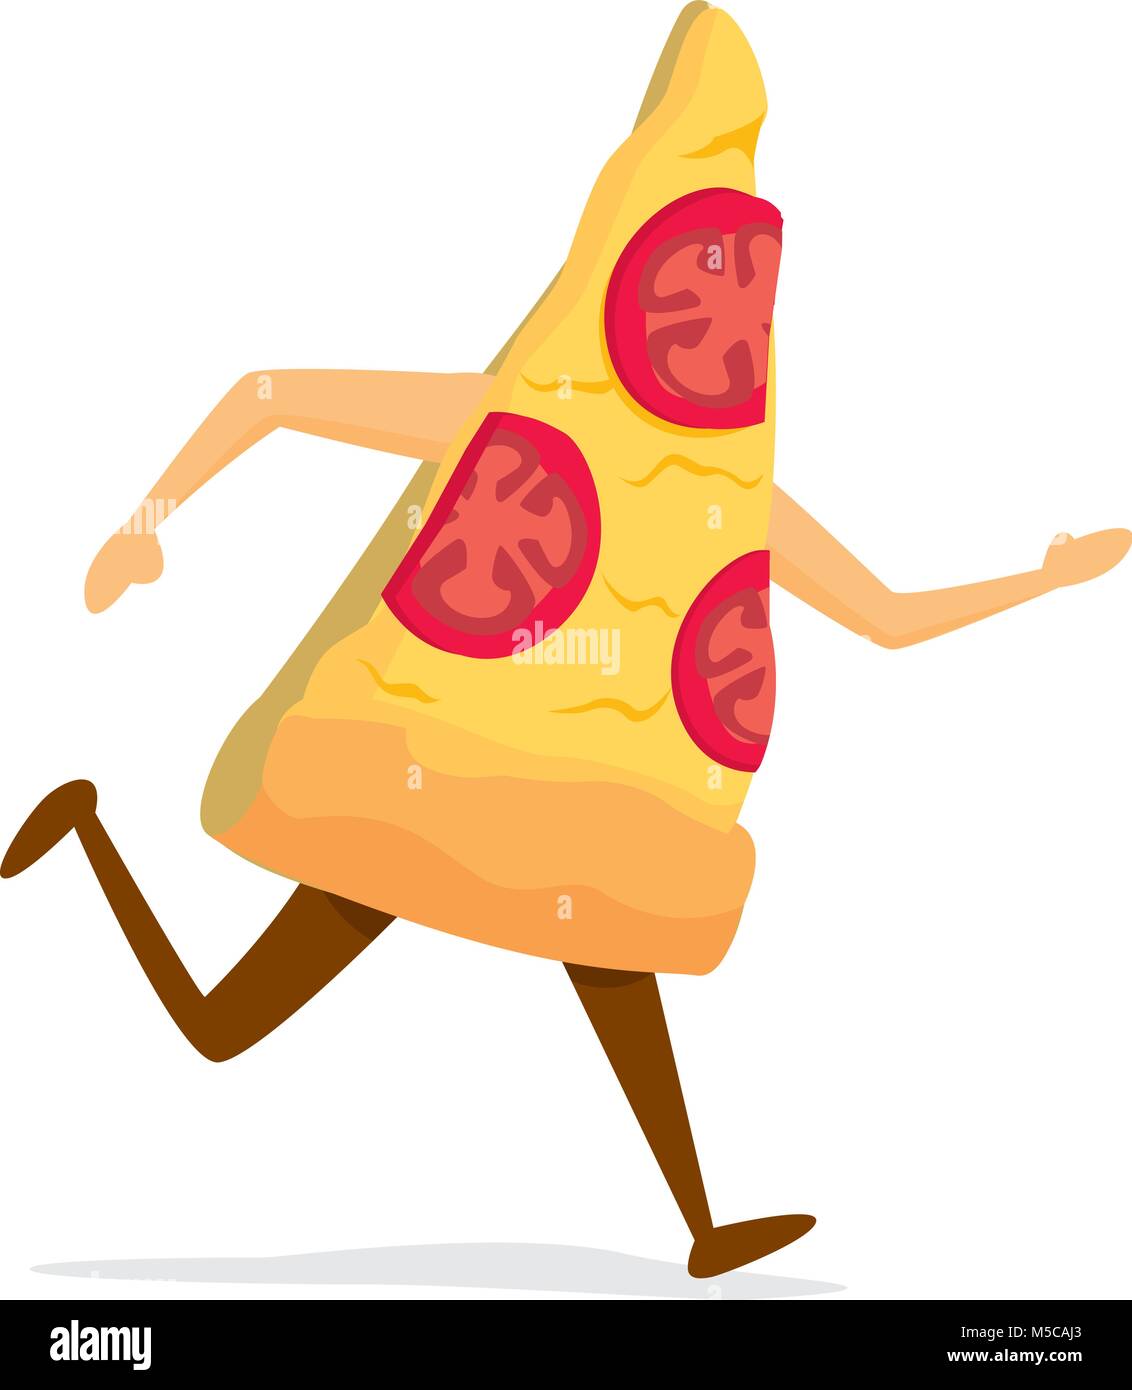 Ilustración de dibujos animados de pizza slice en la carrera Ilustración del Vector